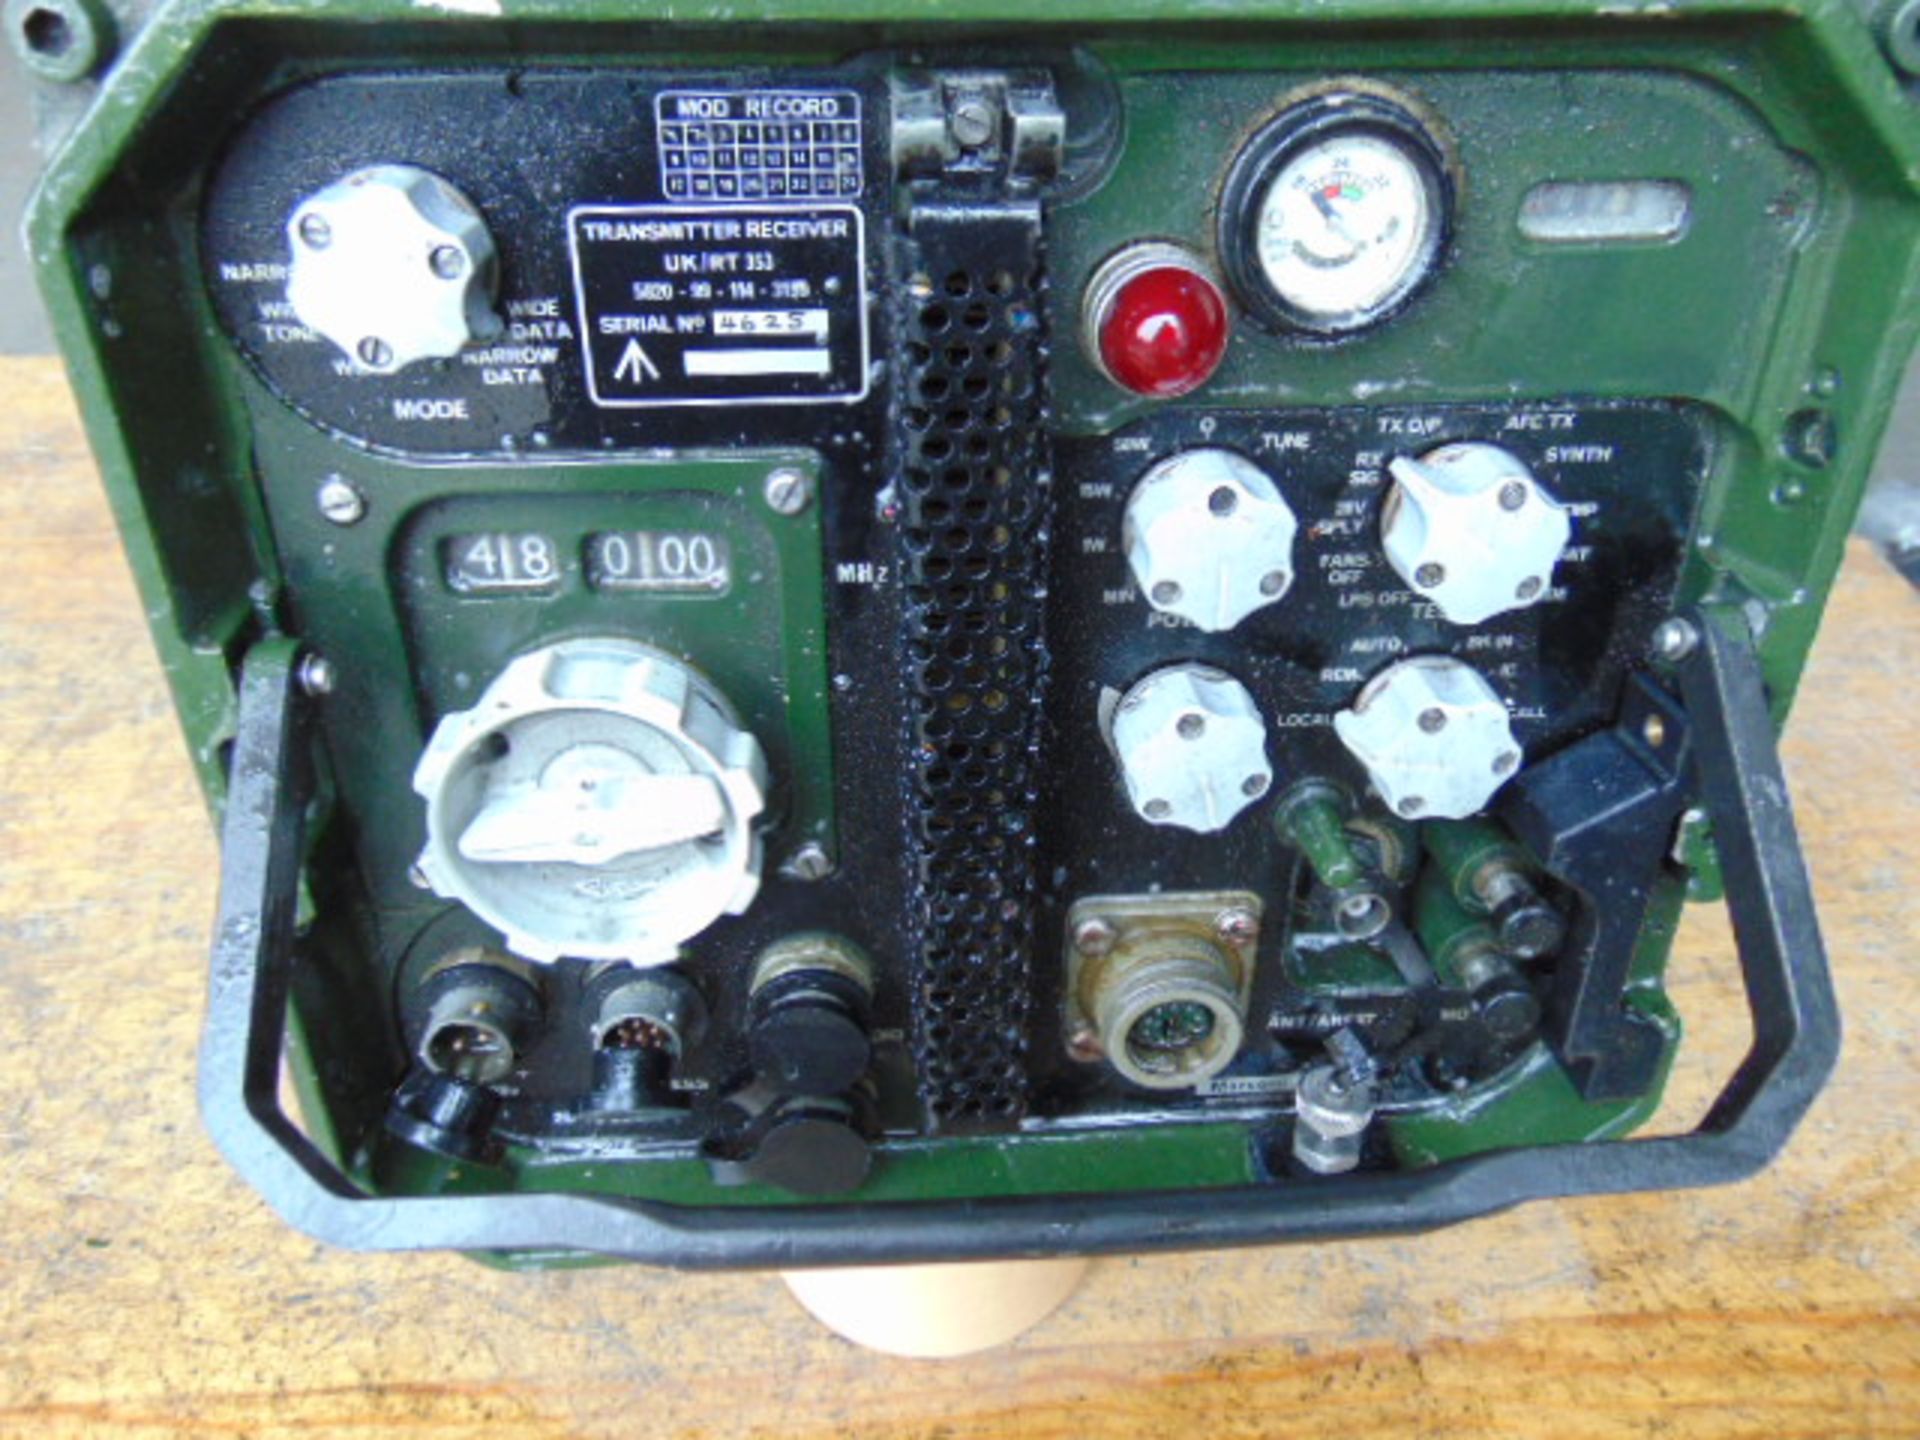 Clansman Transmitter Receiver UK/RT 353 - Image 2 of 6